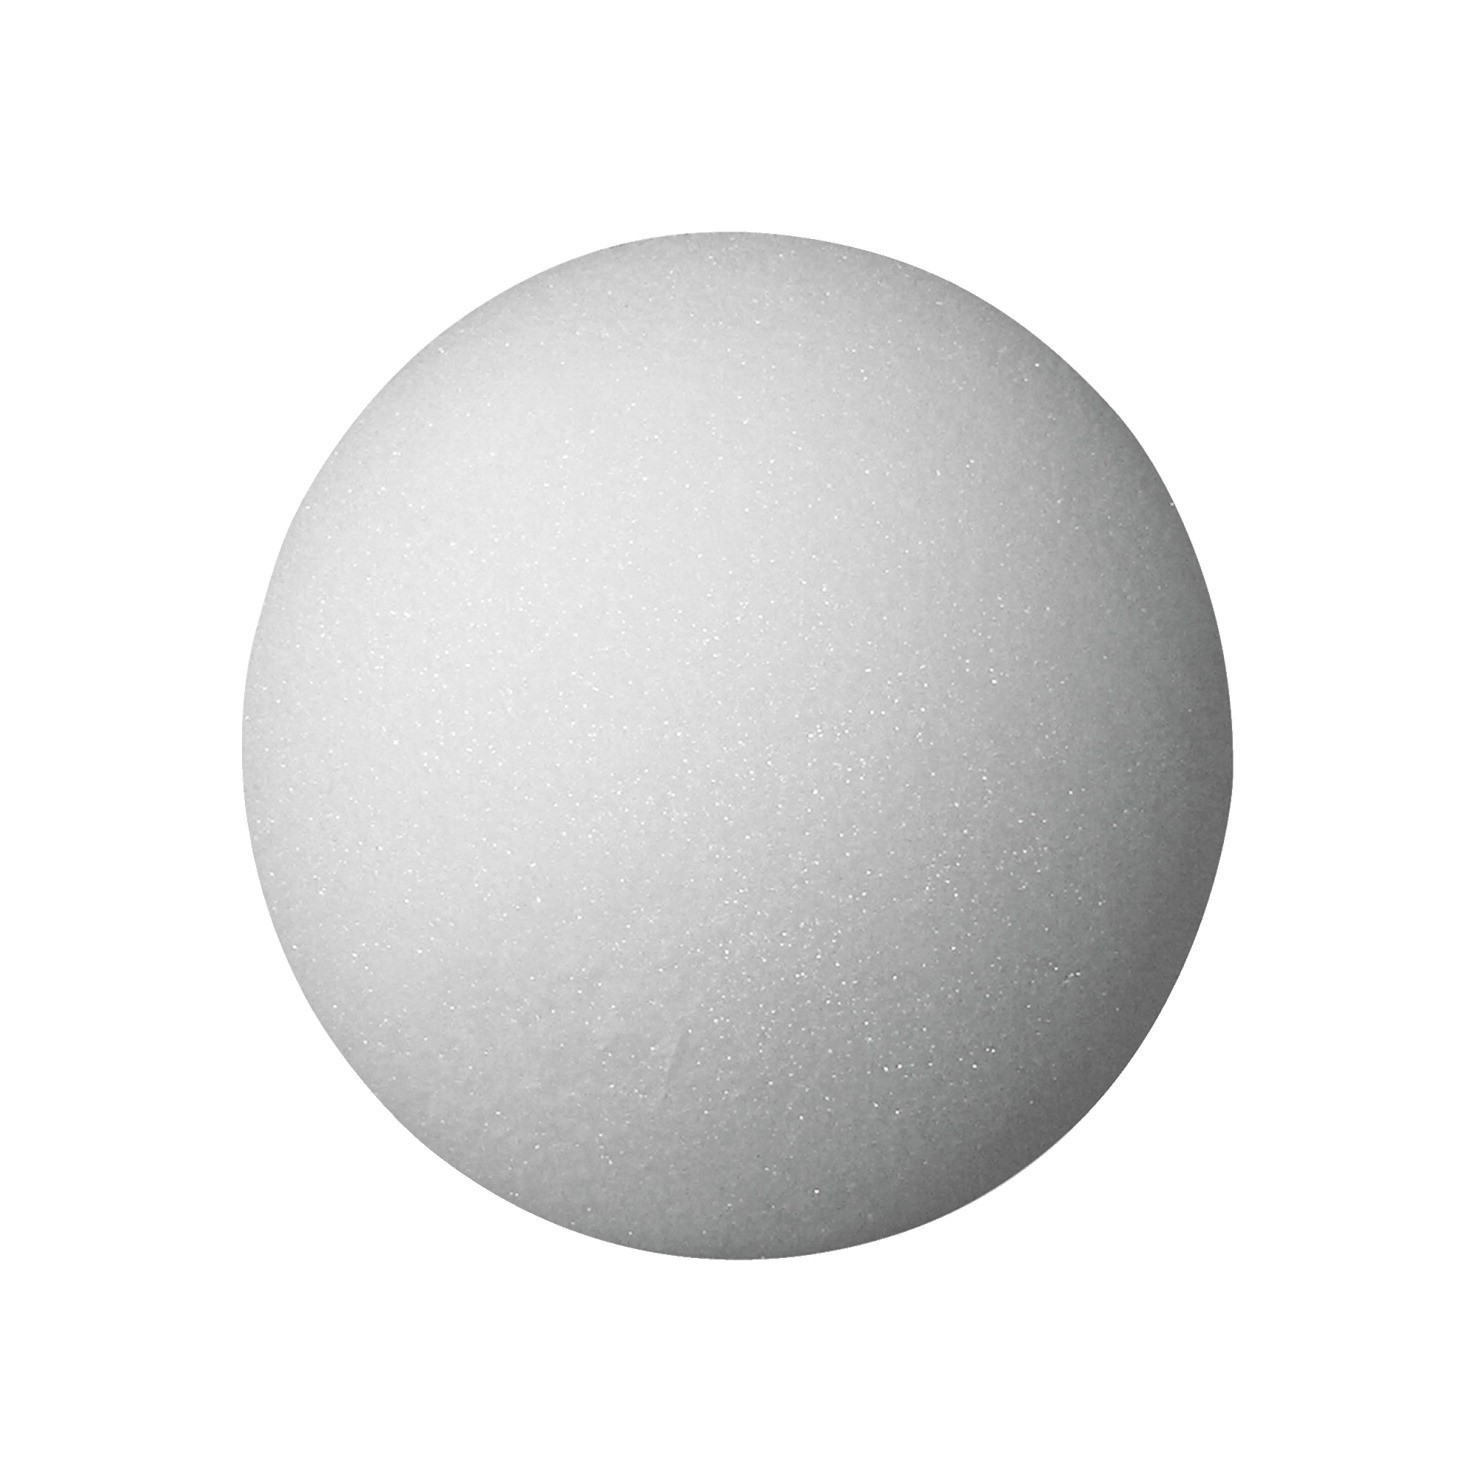 2 In. Styrofoam Balls, White - 12/Pkg